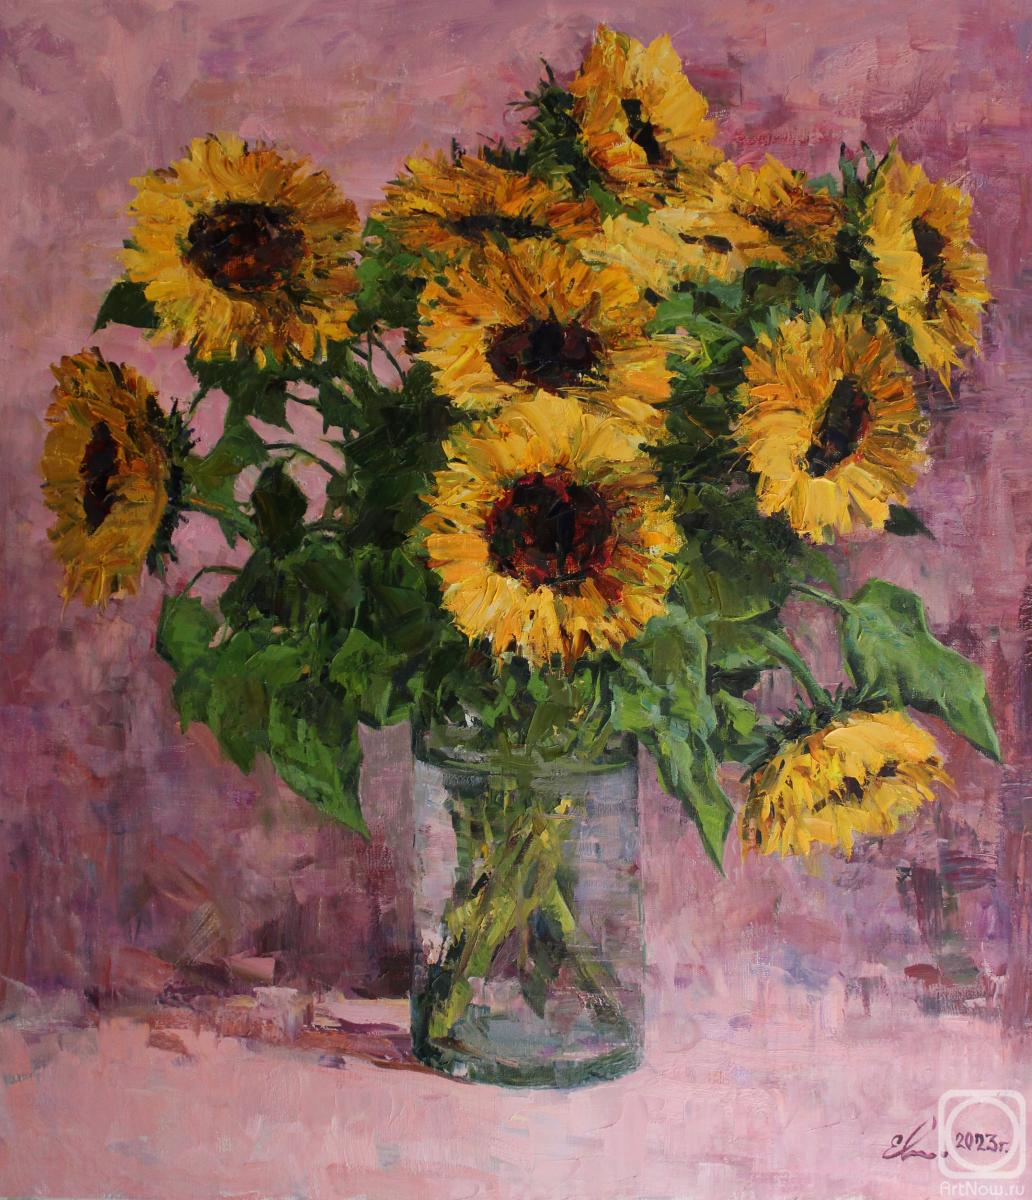 Malykh Evgeny. Sunflowers